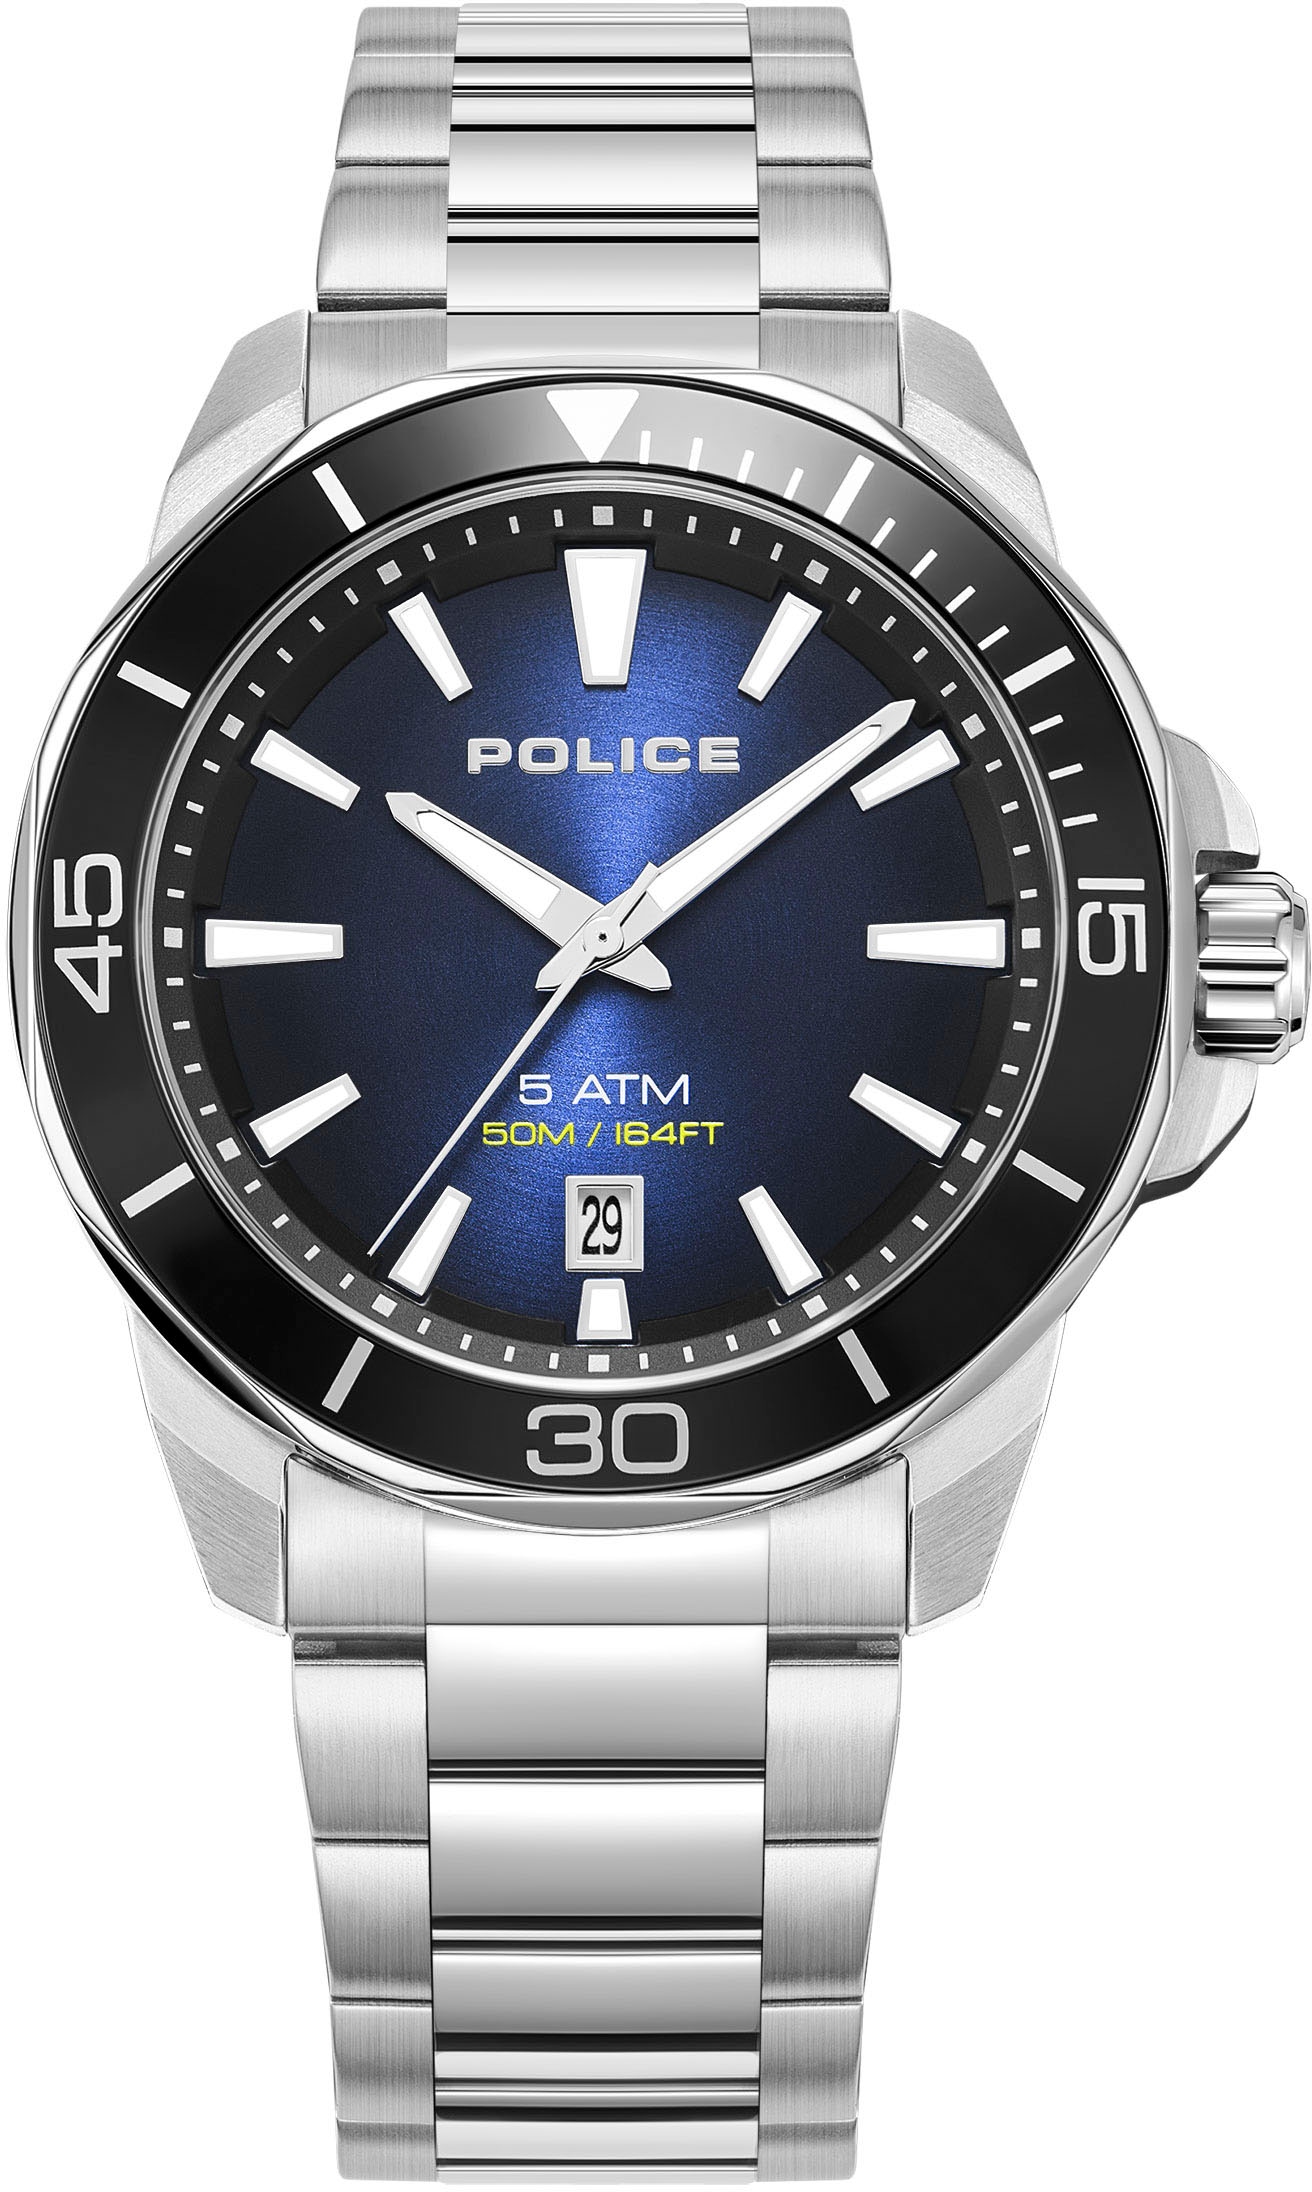 Police Uhren – machen Sie eine Ihrem Handgelenk